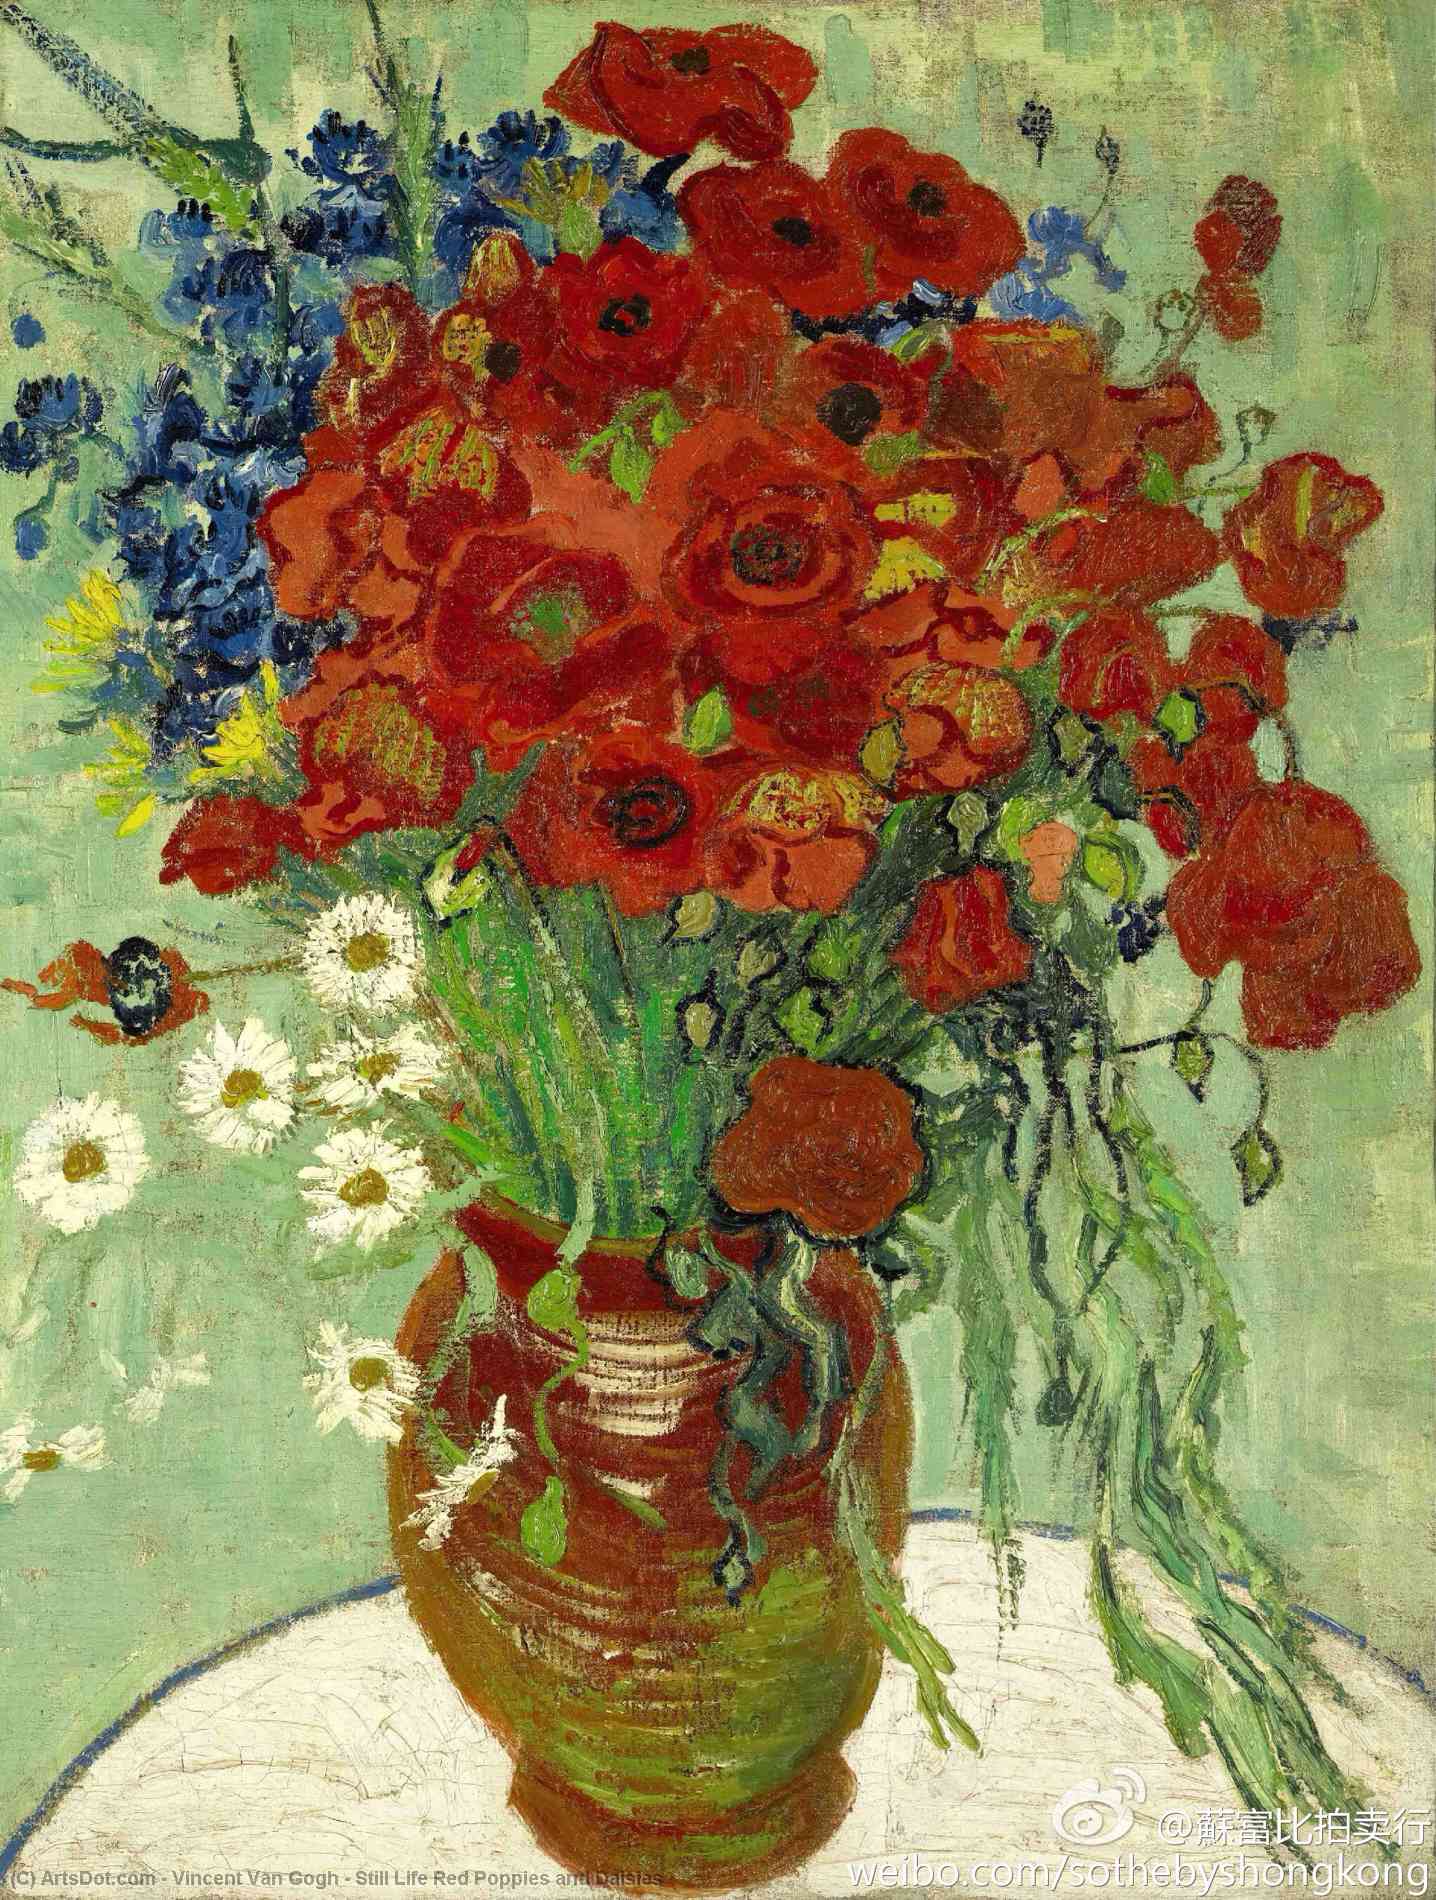 WikiOO.org - Енциклопедия за изящни изкуства - Живопис, Произведения на изкуството Vincent Van Gogh - Still Life Red Poppies and Daisies